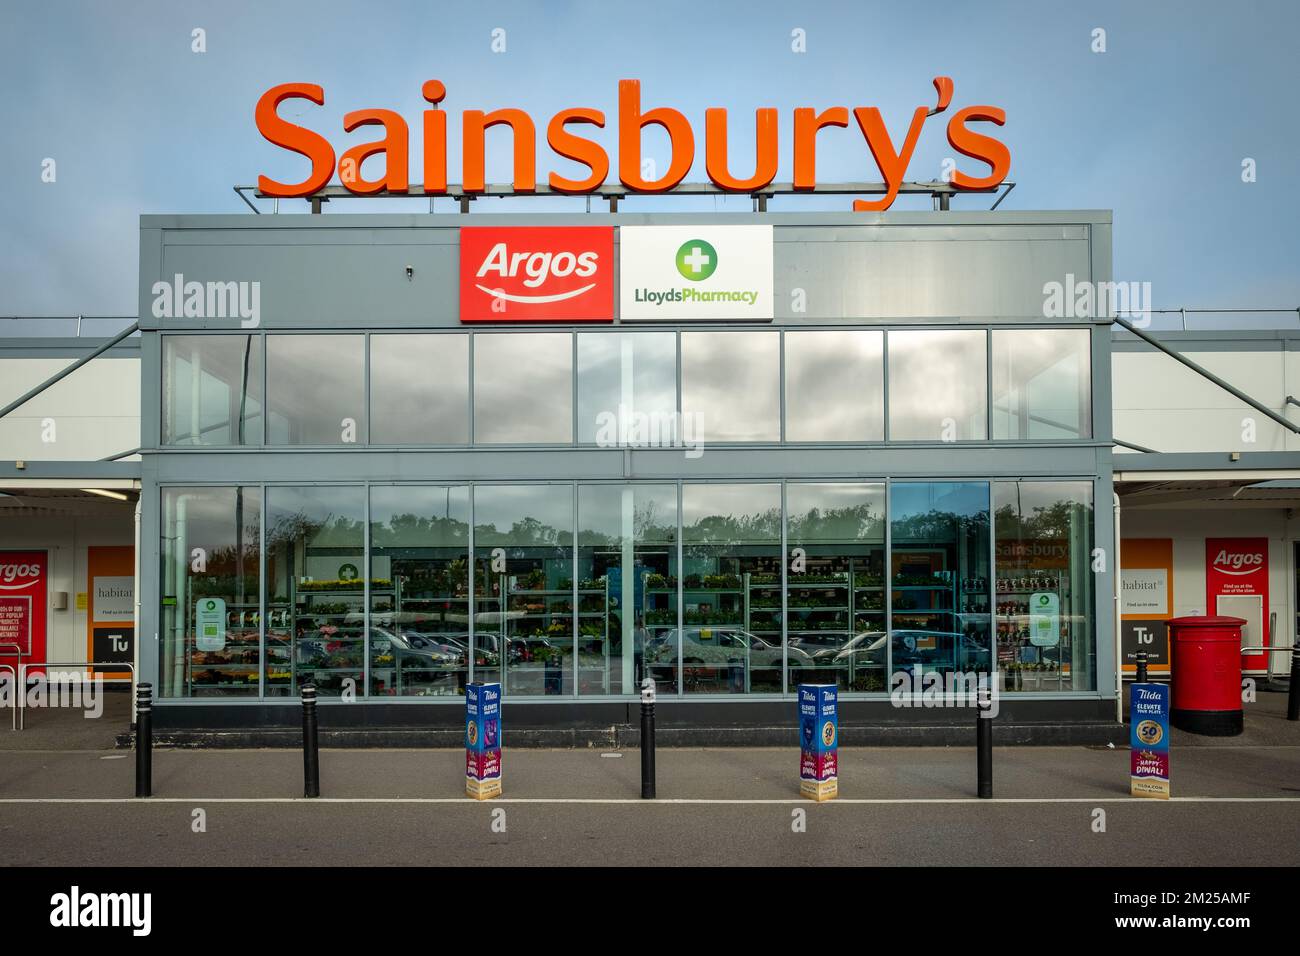 Basingstoke, Regno Unito - Settembre 2022: Ingresso di Sainsbury con l'insegna della farmacia Argos e Lloyds - la principale catena di supermercati britannica Foto Stock